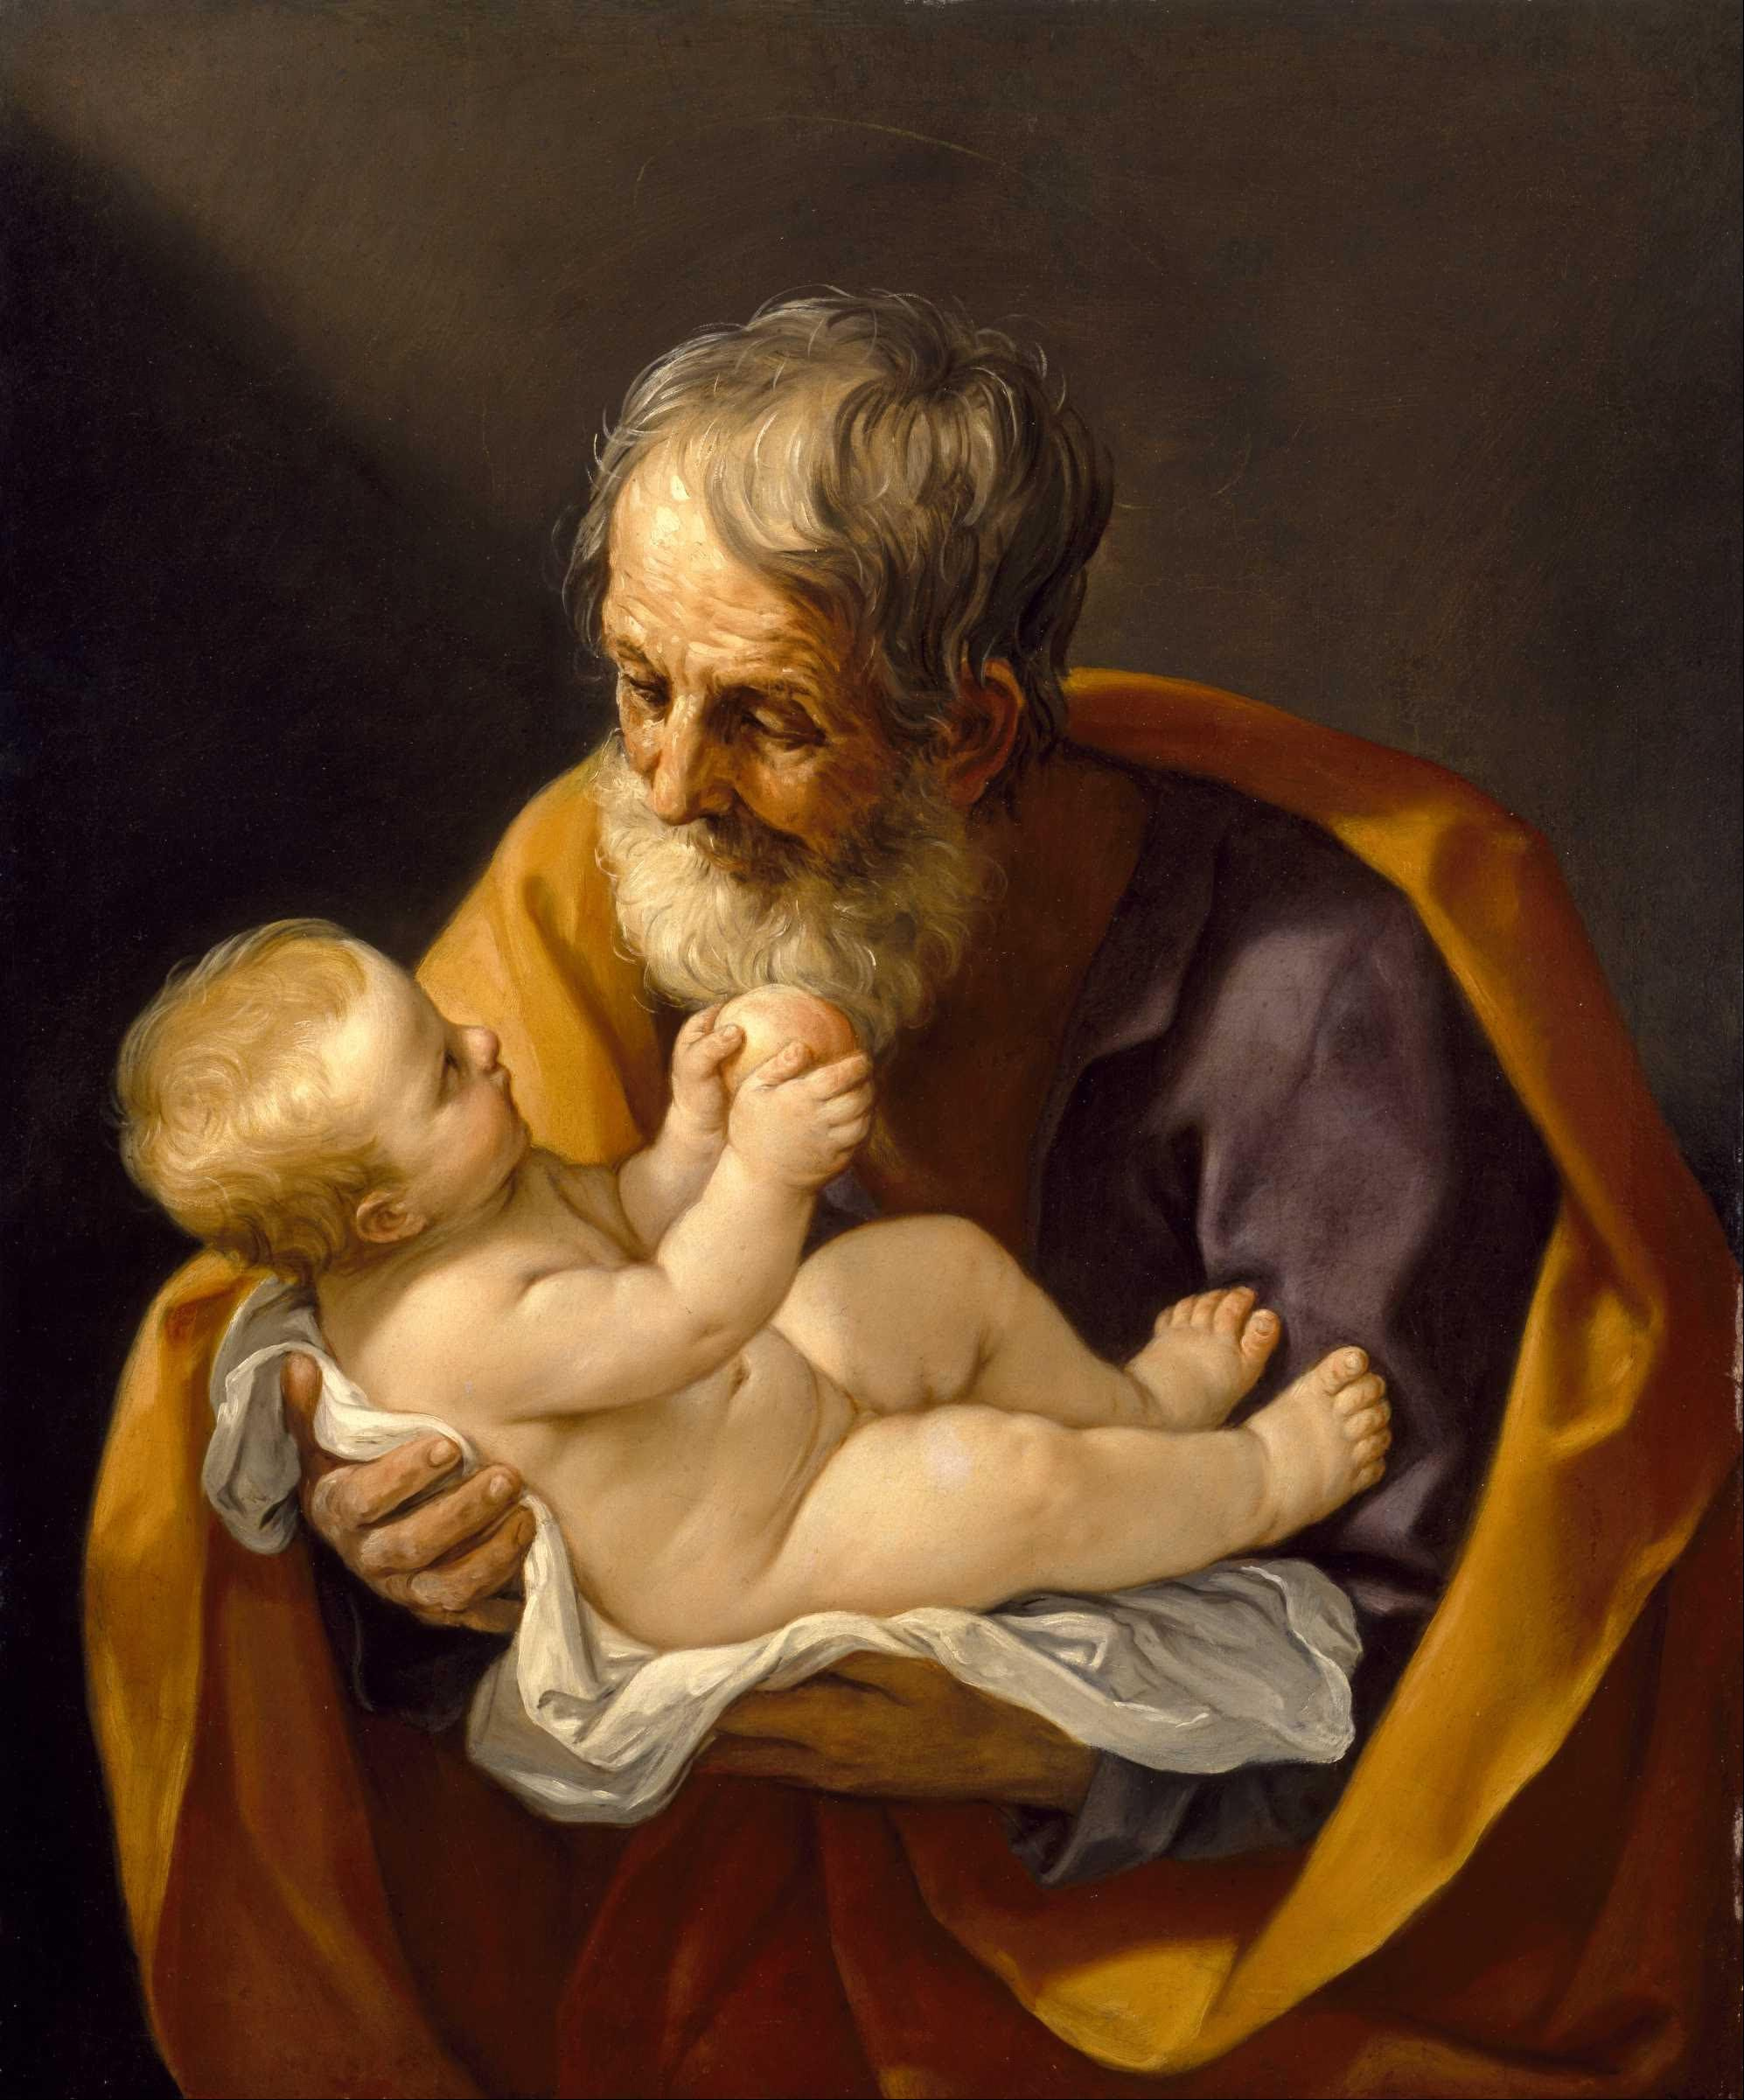 San Giuseppe e il Cristo bambino by Guido Reni - 1640 - 72.4 x 88.9 cm 